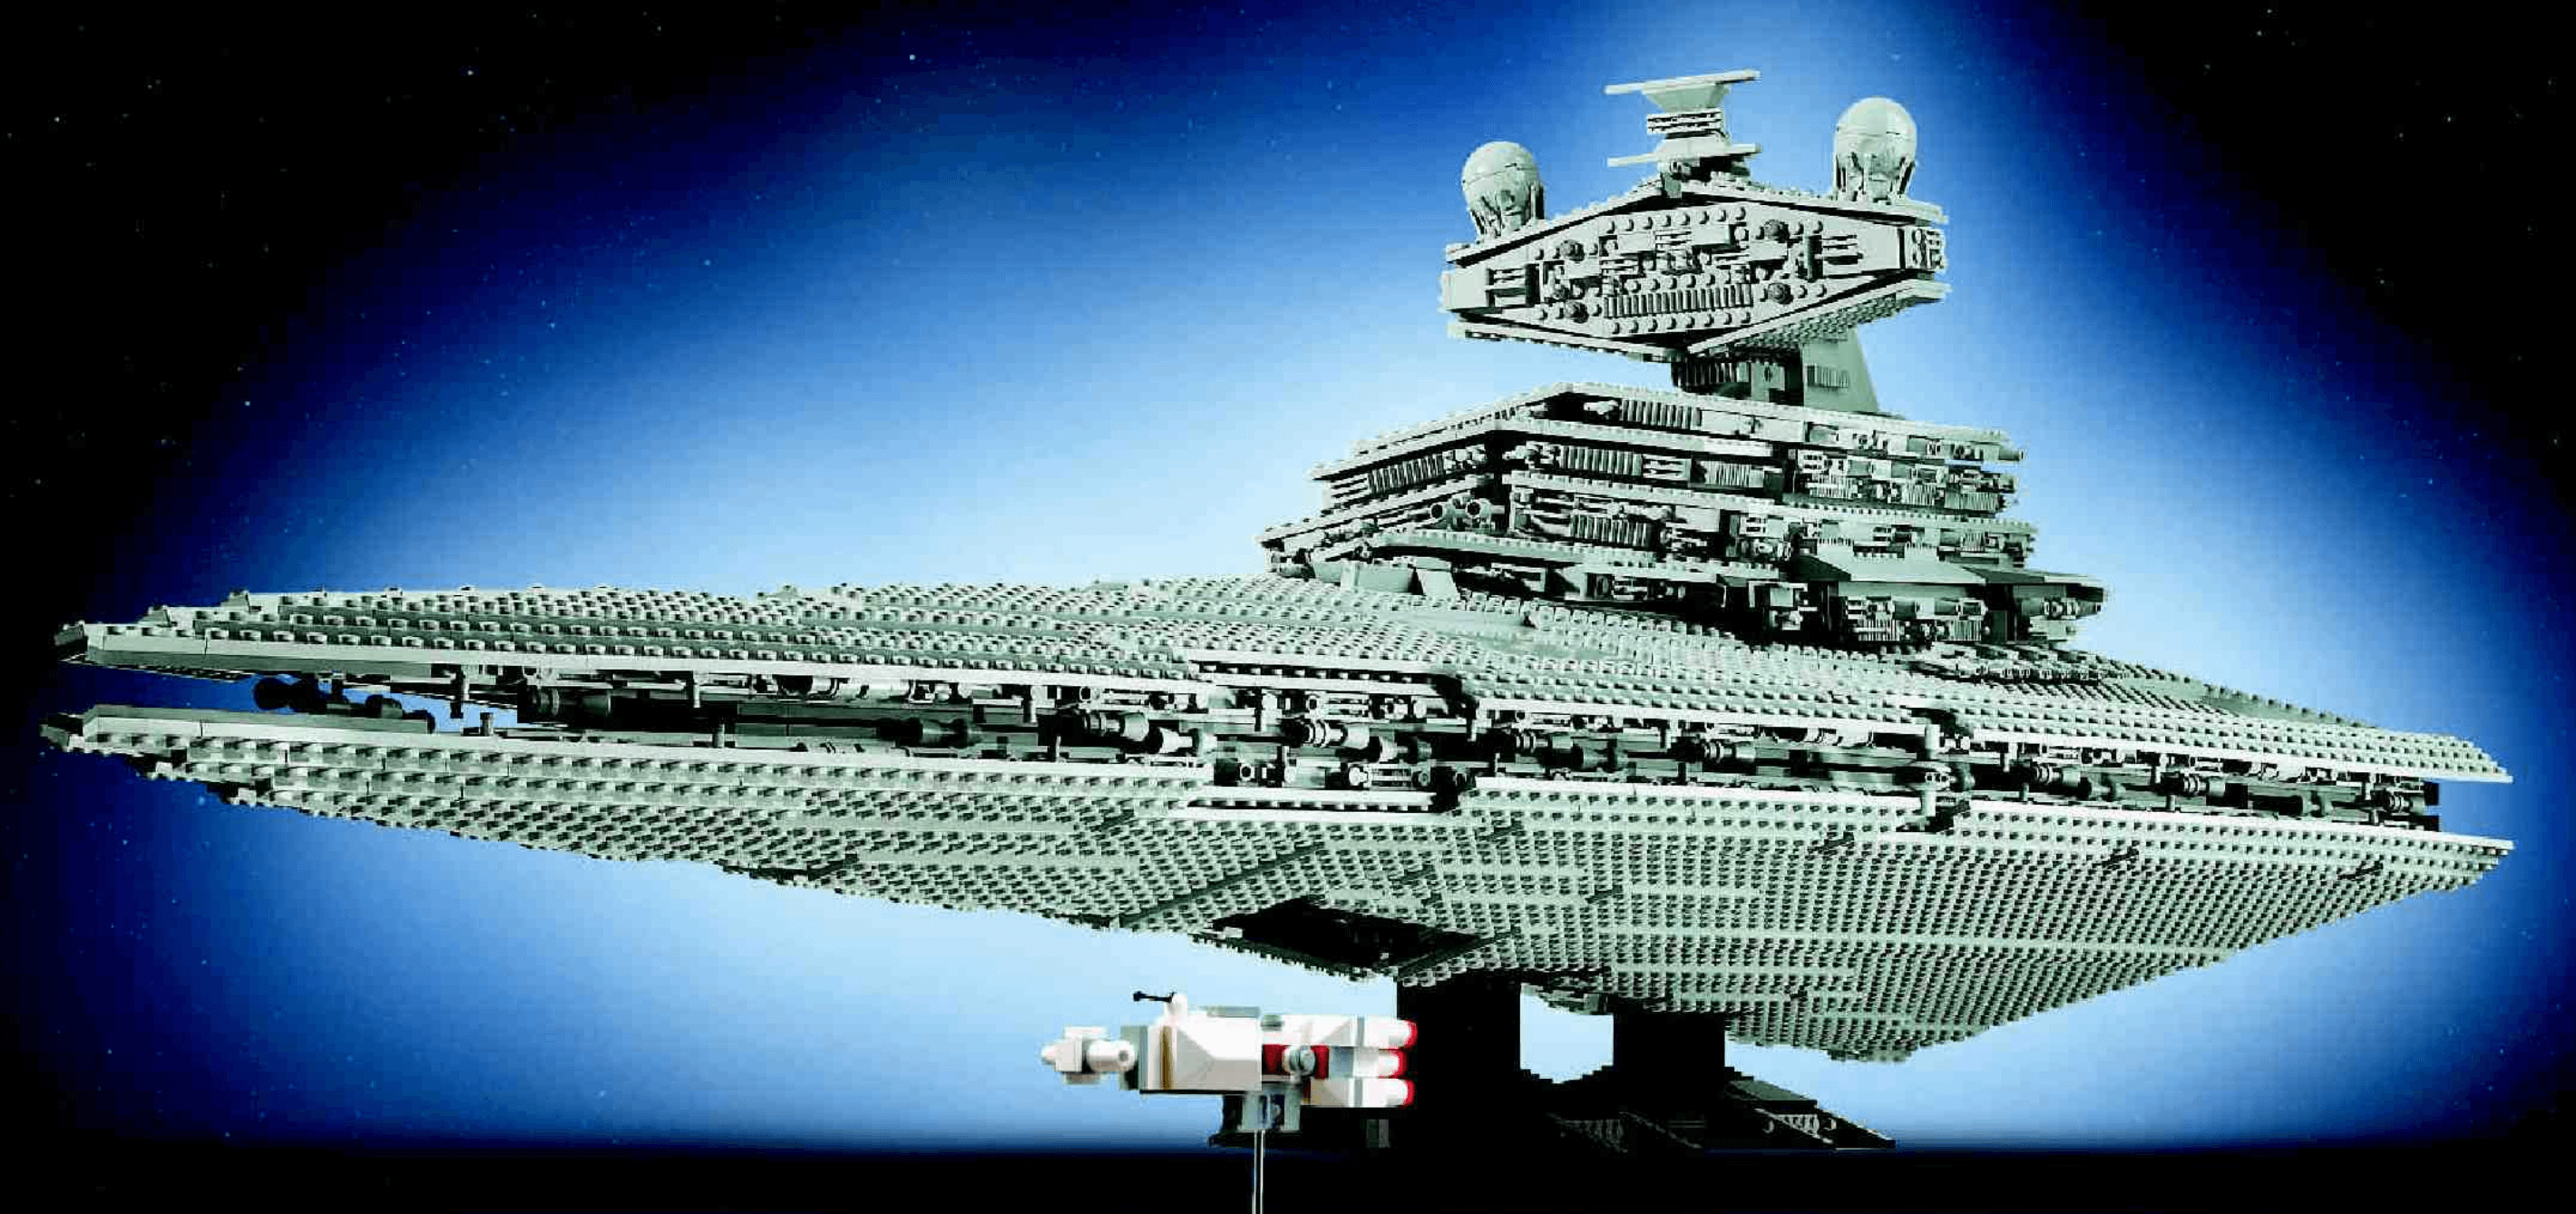 Chemie Belegering oosten LEGO Star Wars 75252 Imperial Star Destroyer wordt op 5 september  gepresenteerd